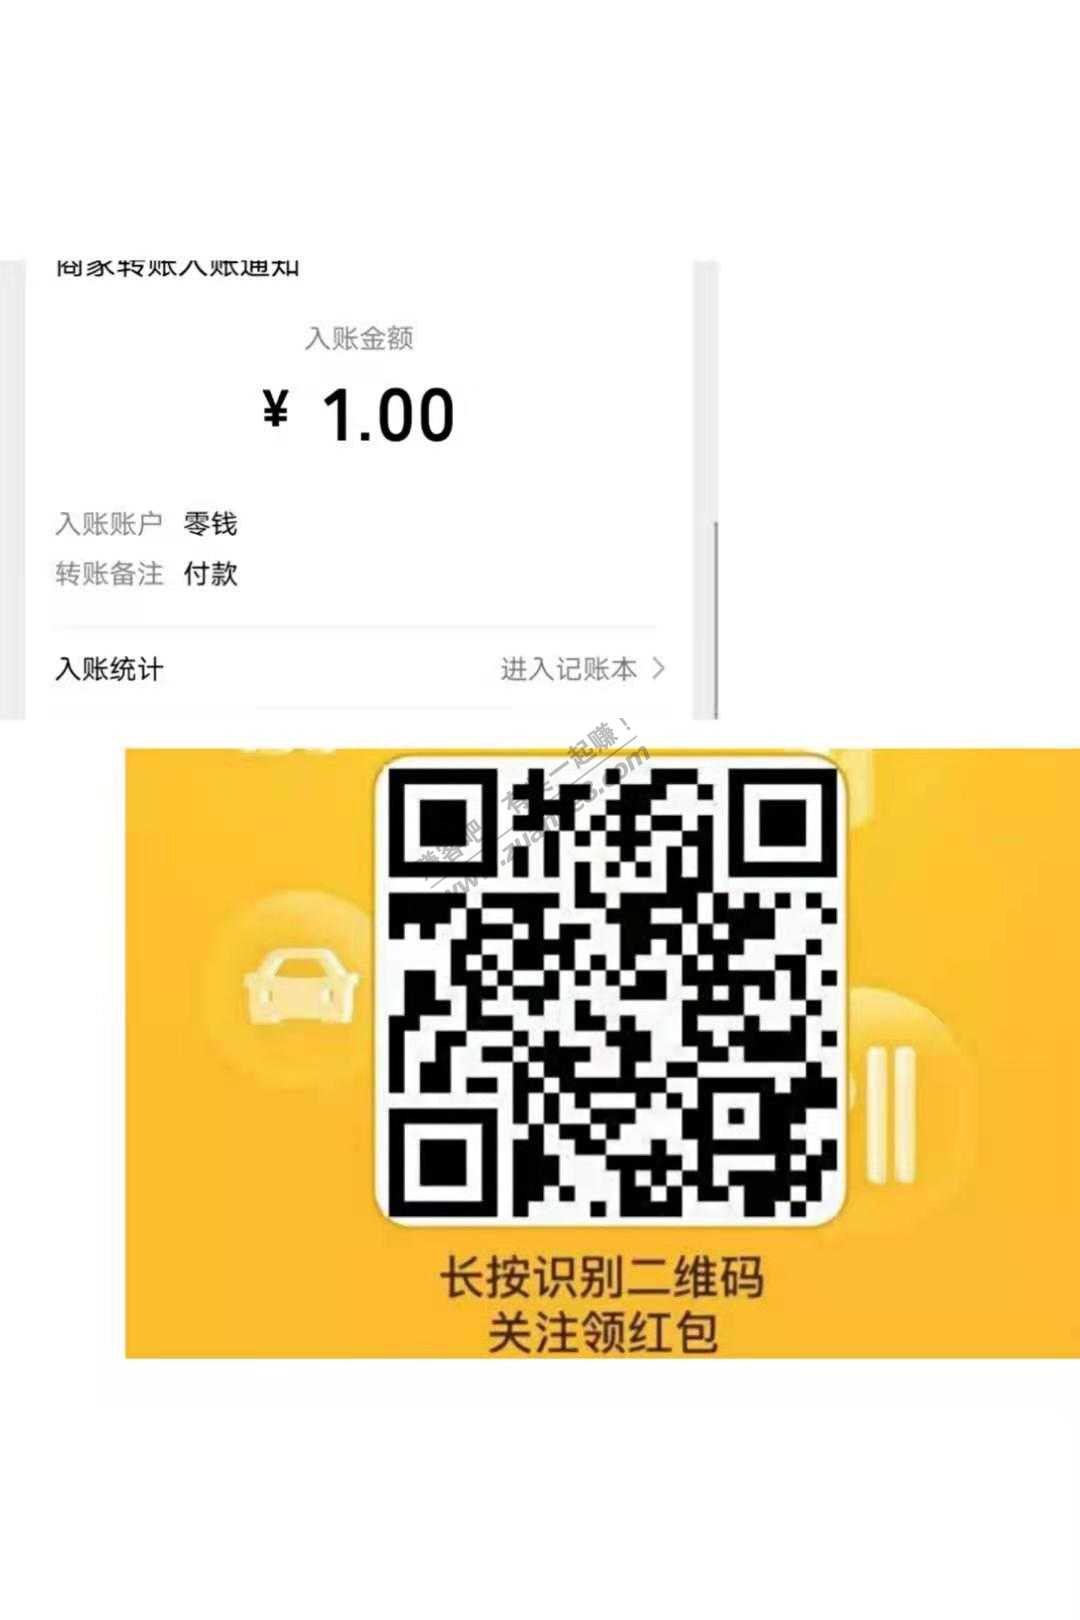 1元微信红包-快上-惠小助(52huixz.com)